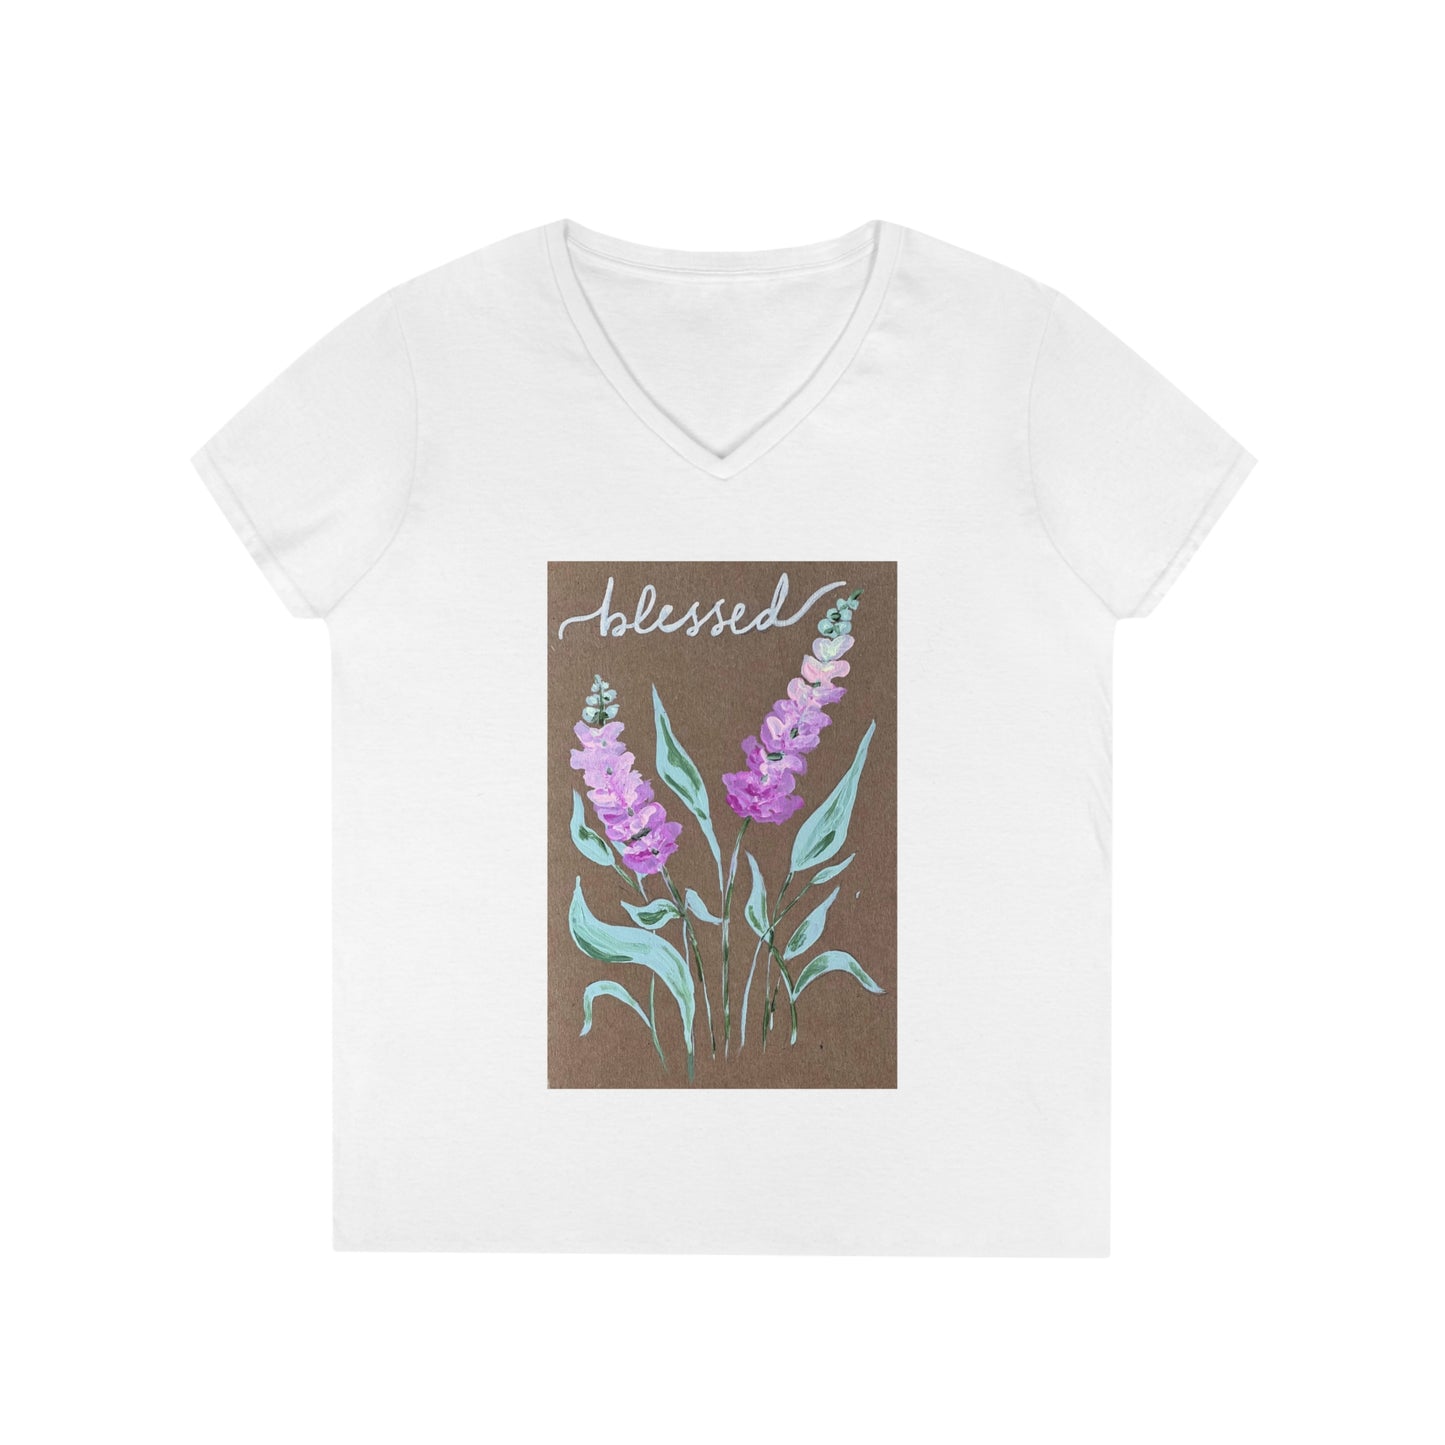 Blessed - Ladies' V-Neck T-Shirt